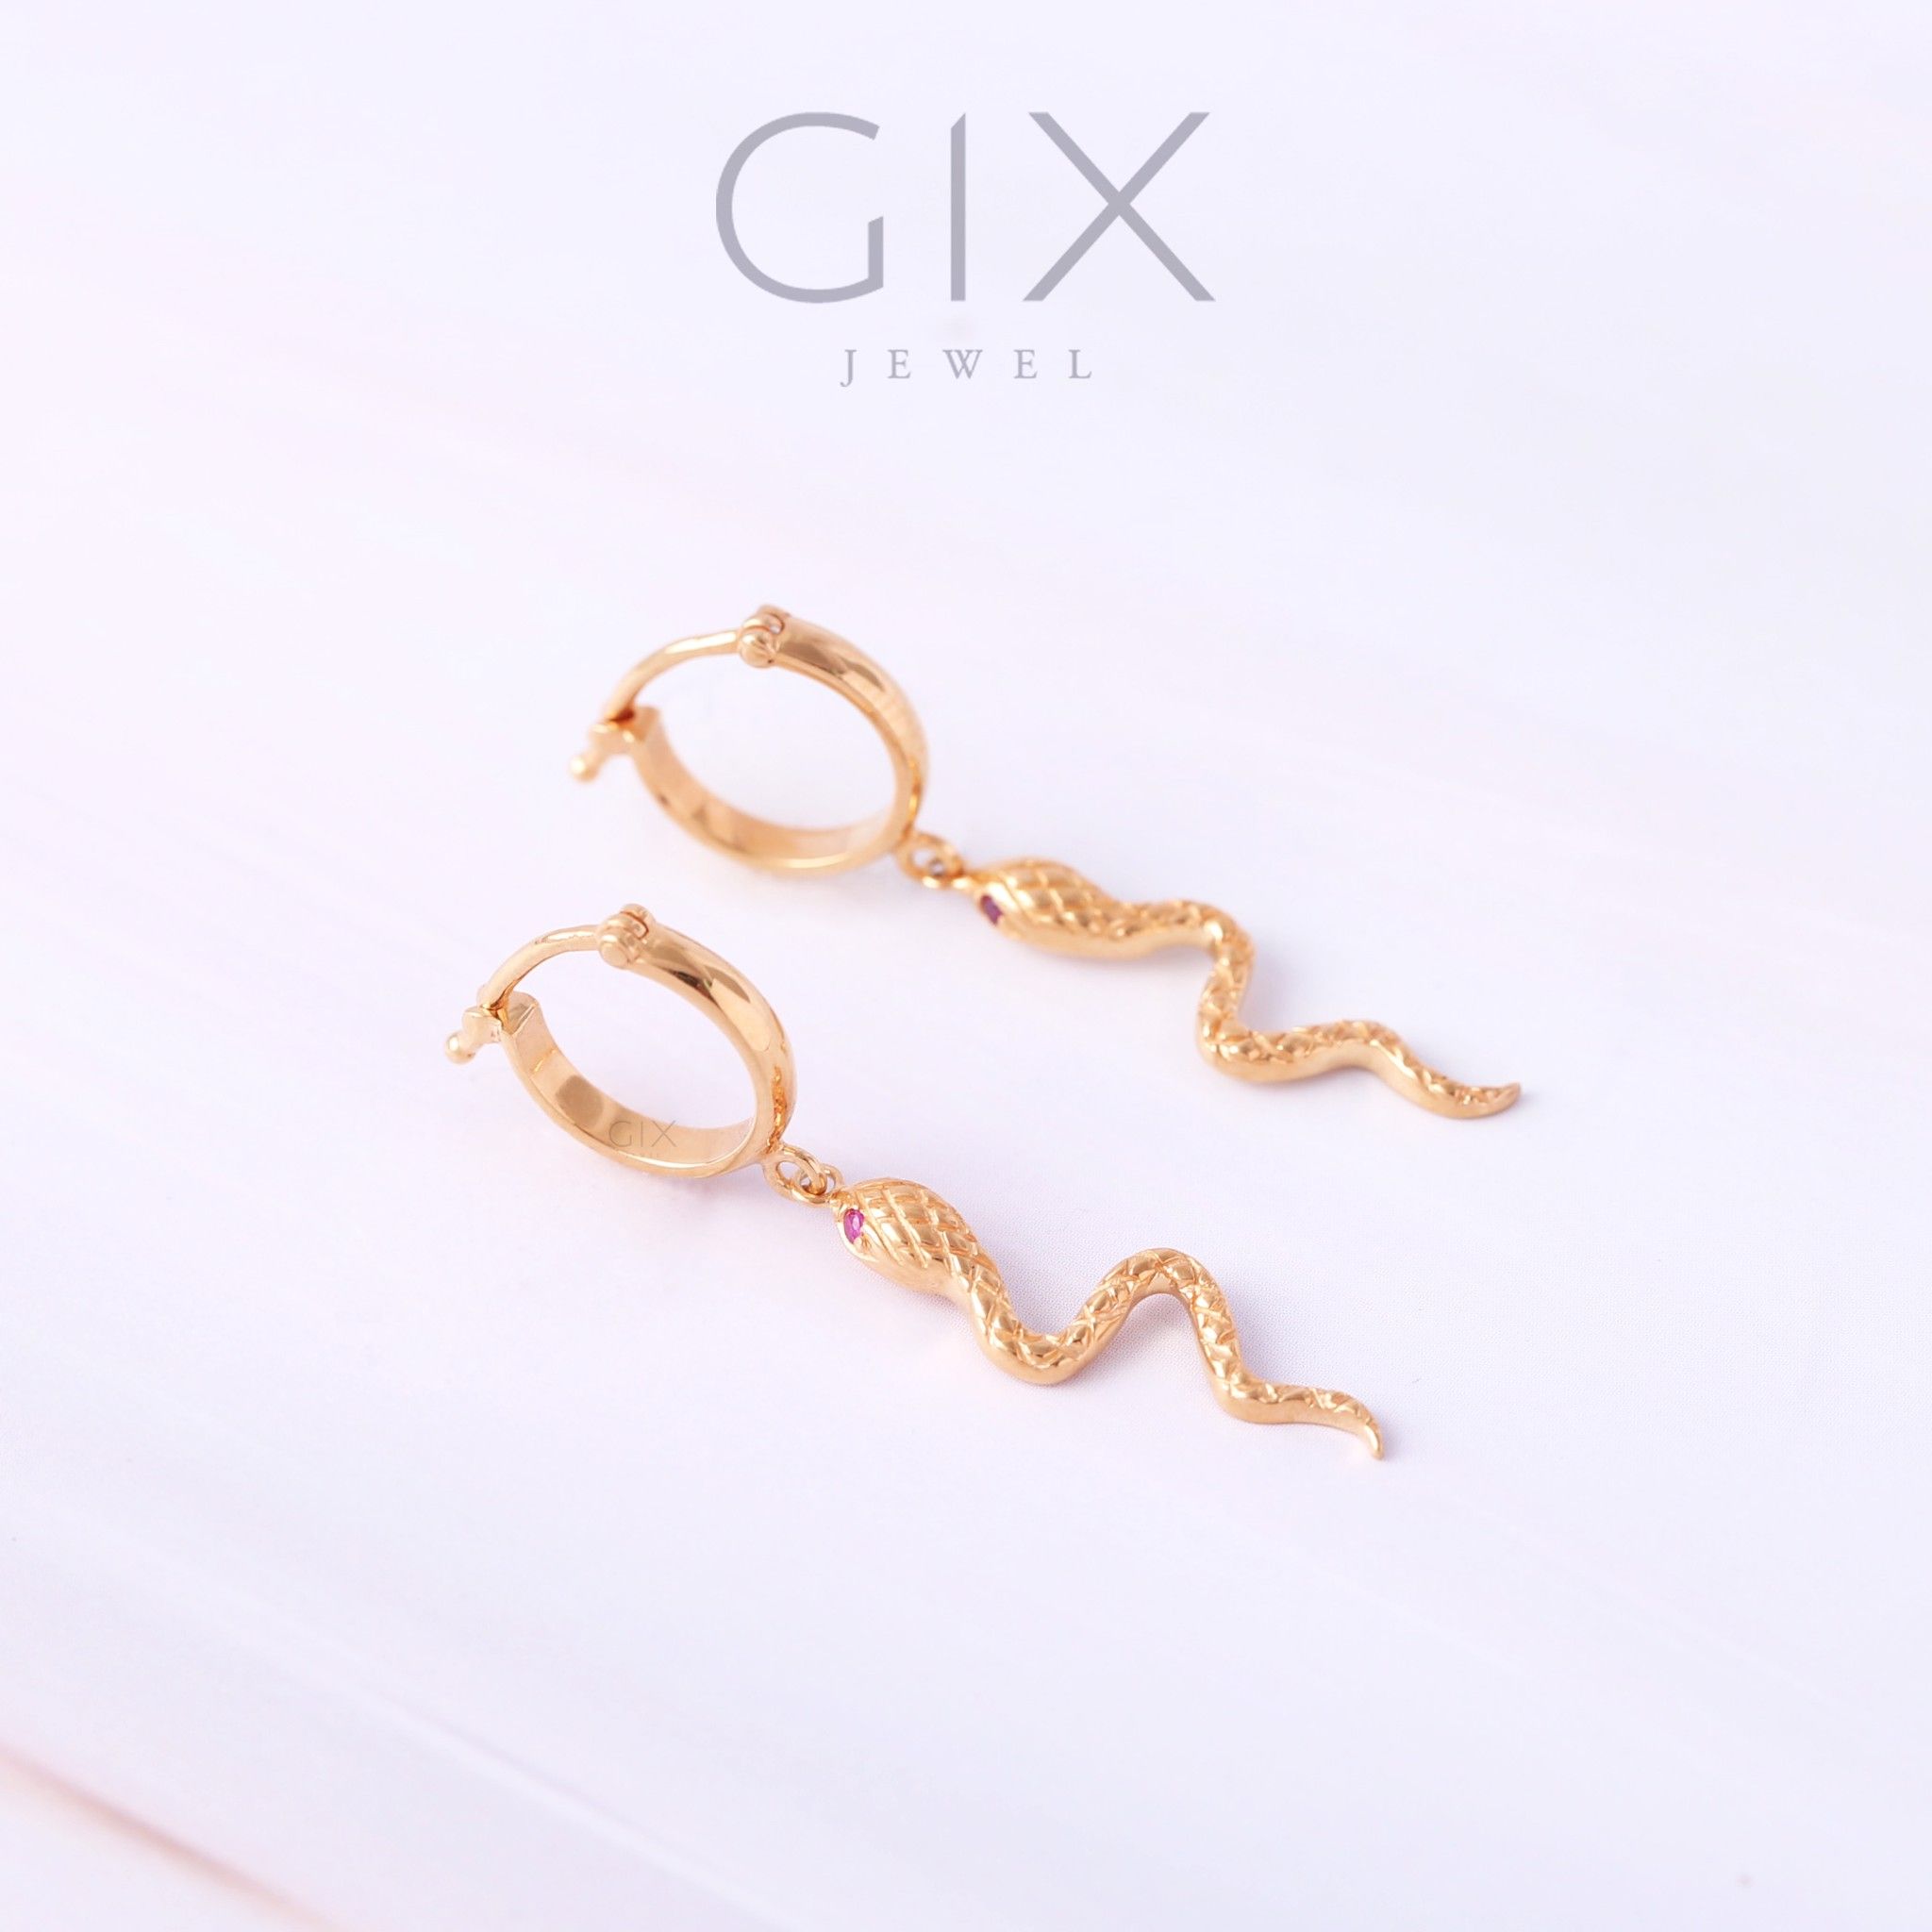  Bông tai bạc mạ vàng con rắn thiết kế độc quyền tinh xảo Gix Jewel BT08 